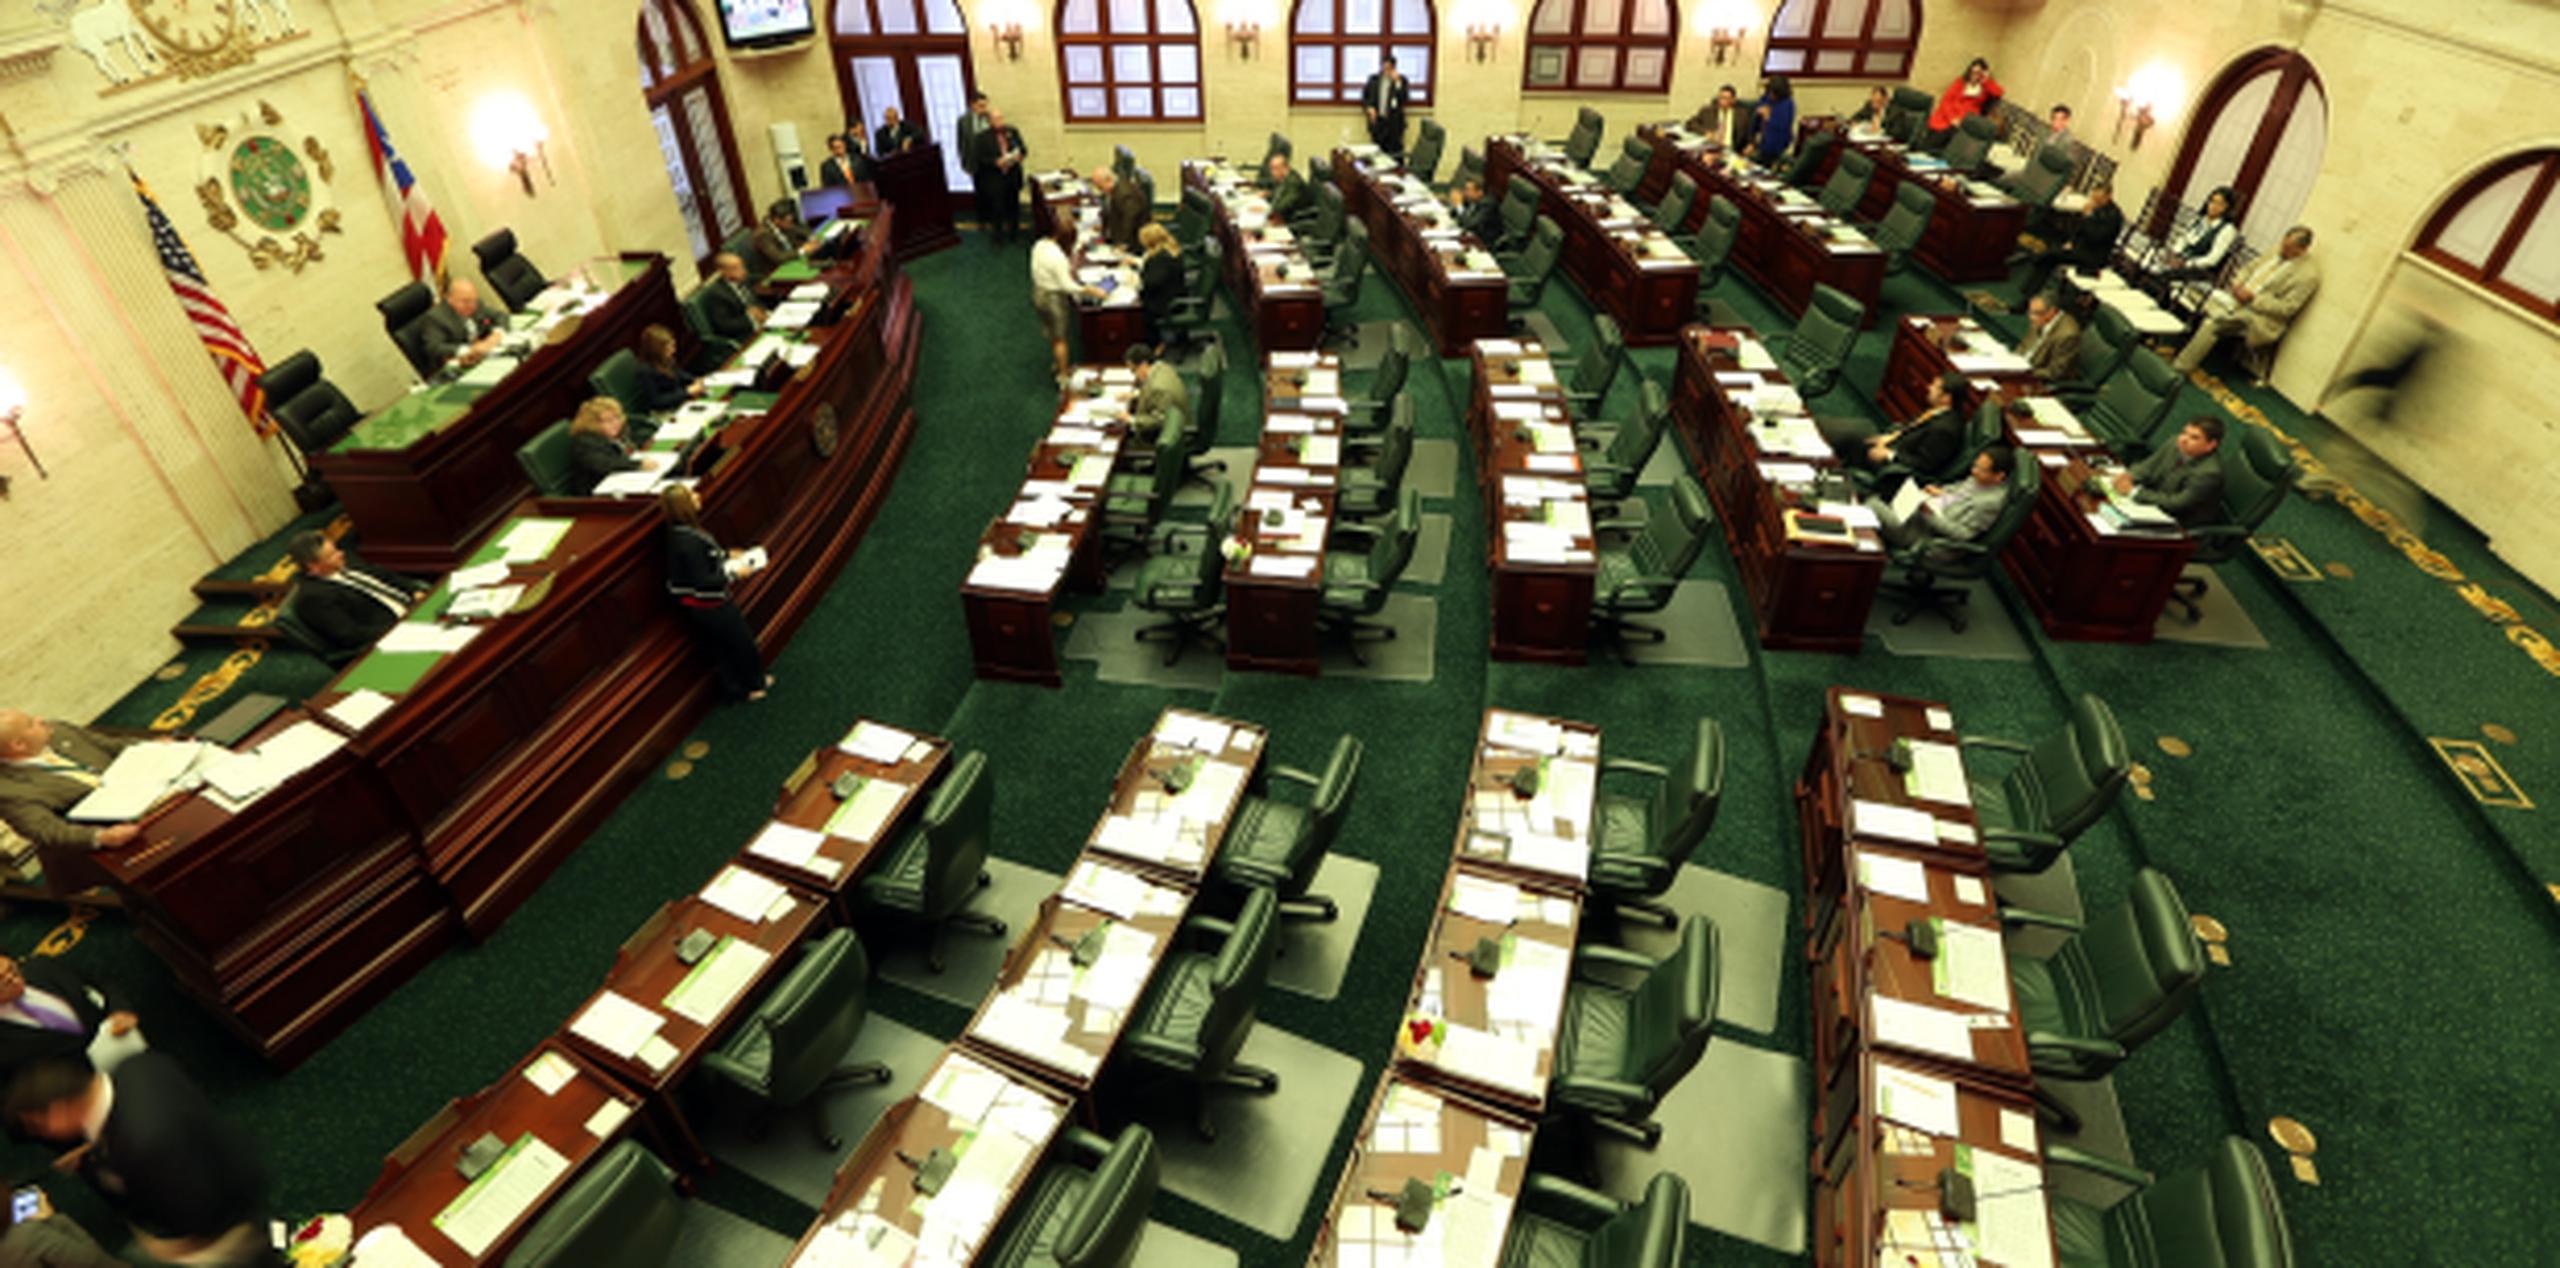 La Resolución Concurrente de la Cámara 35 reclama que el asunto se atienda con urgencia para garantizar el bienestar de los viequenses, así como el desarrollo económico de la isla municipio. (Archivo)